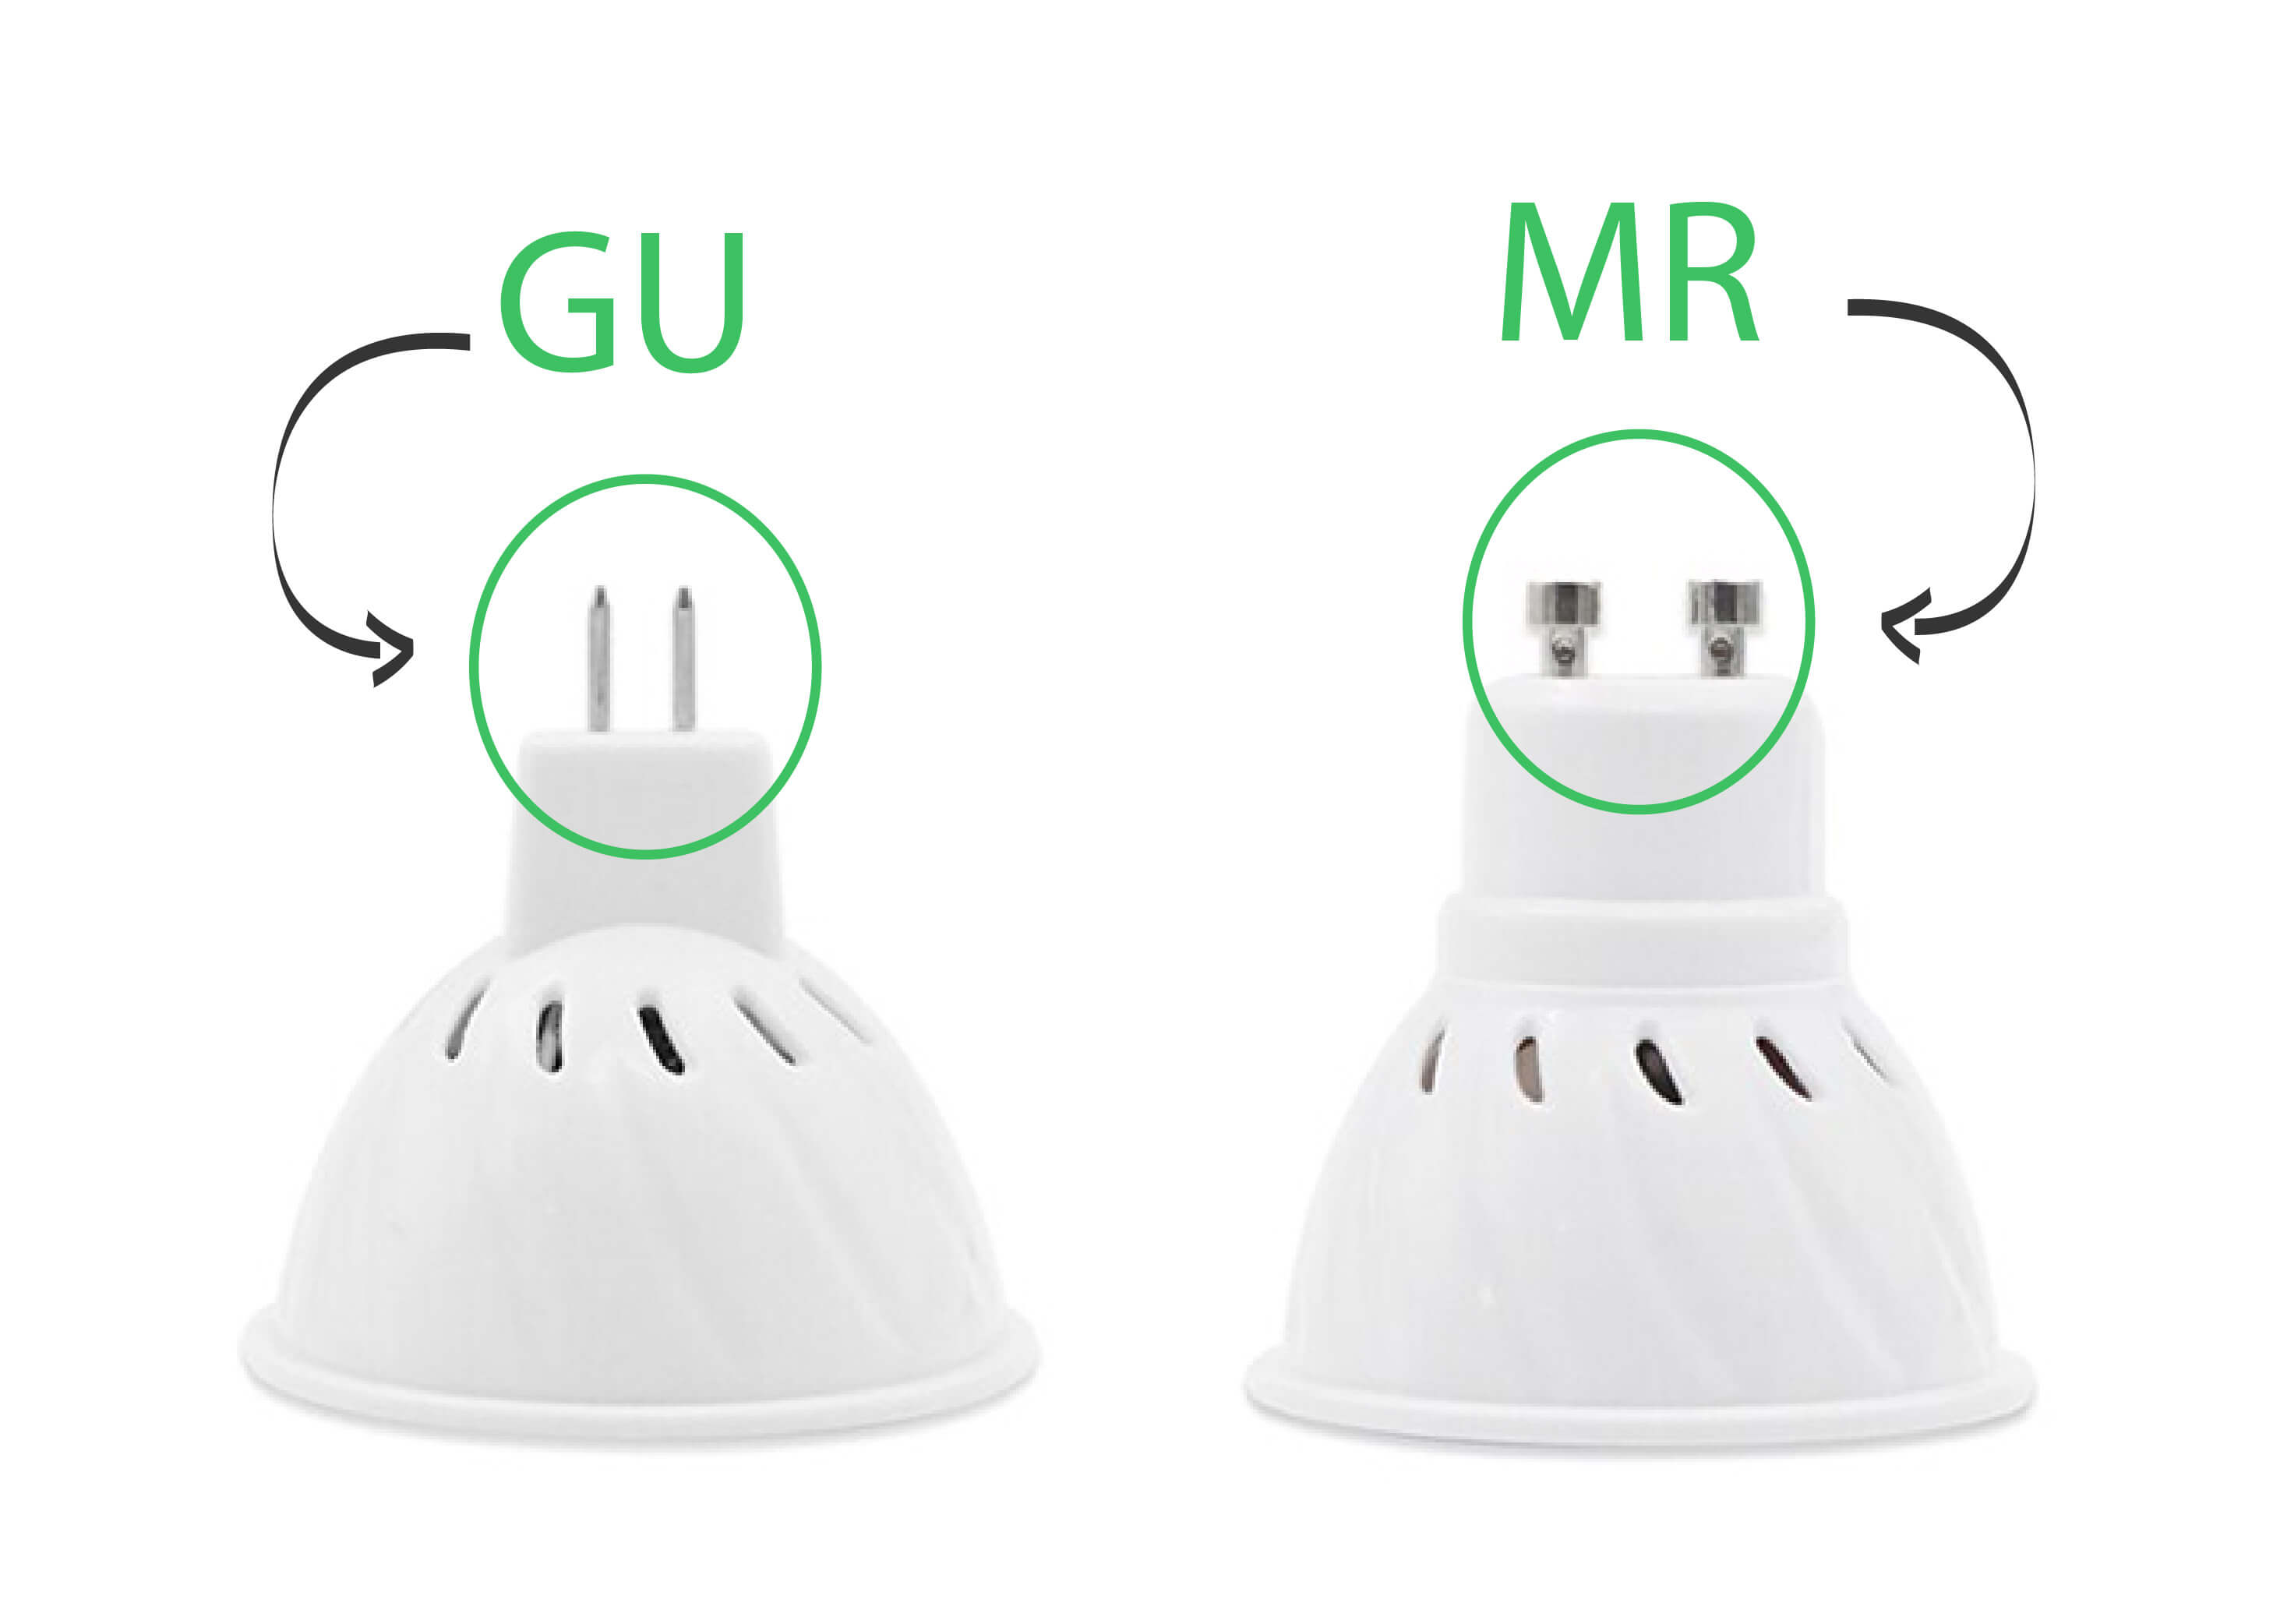  Figura explicativa da ponta das lâmpadas GU e MR